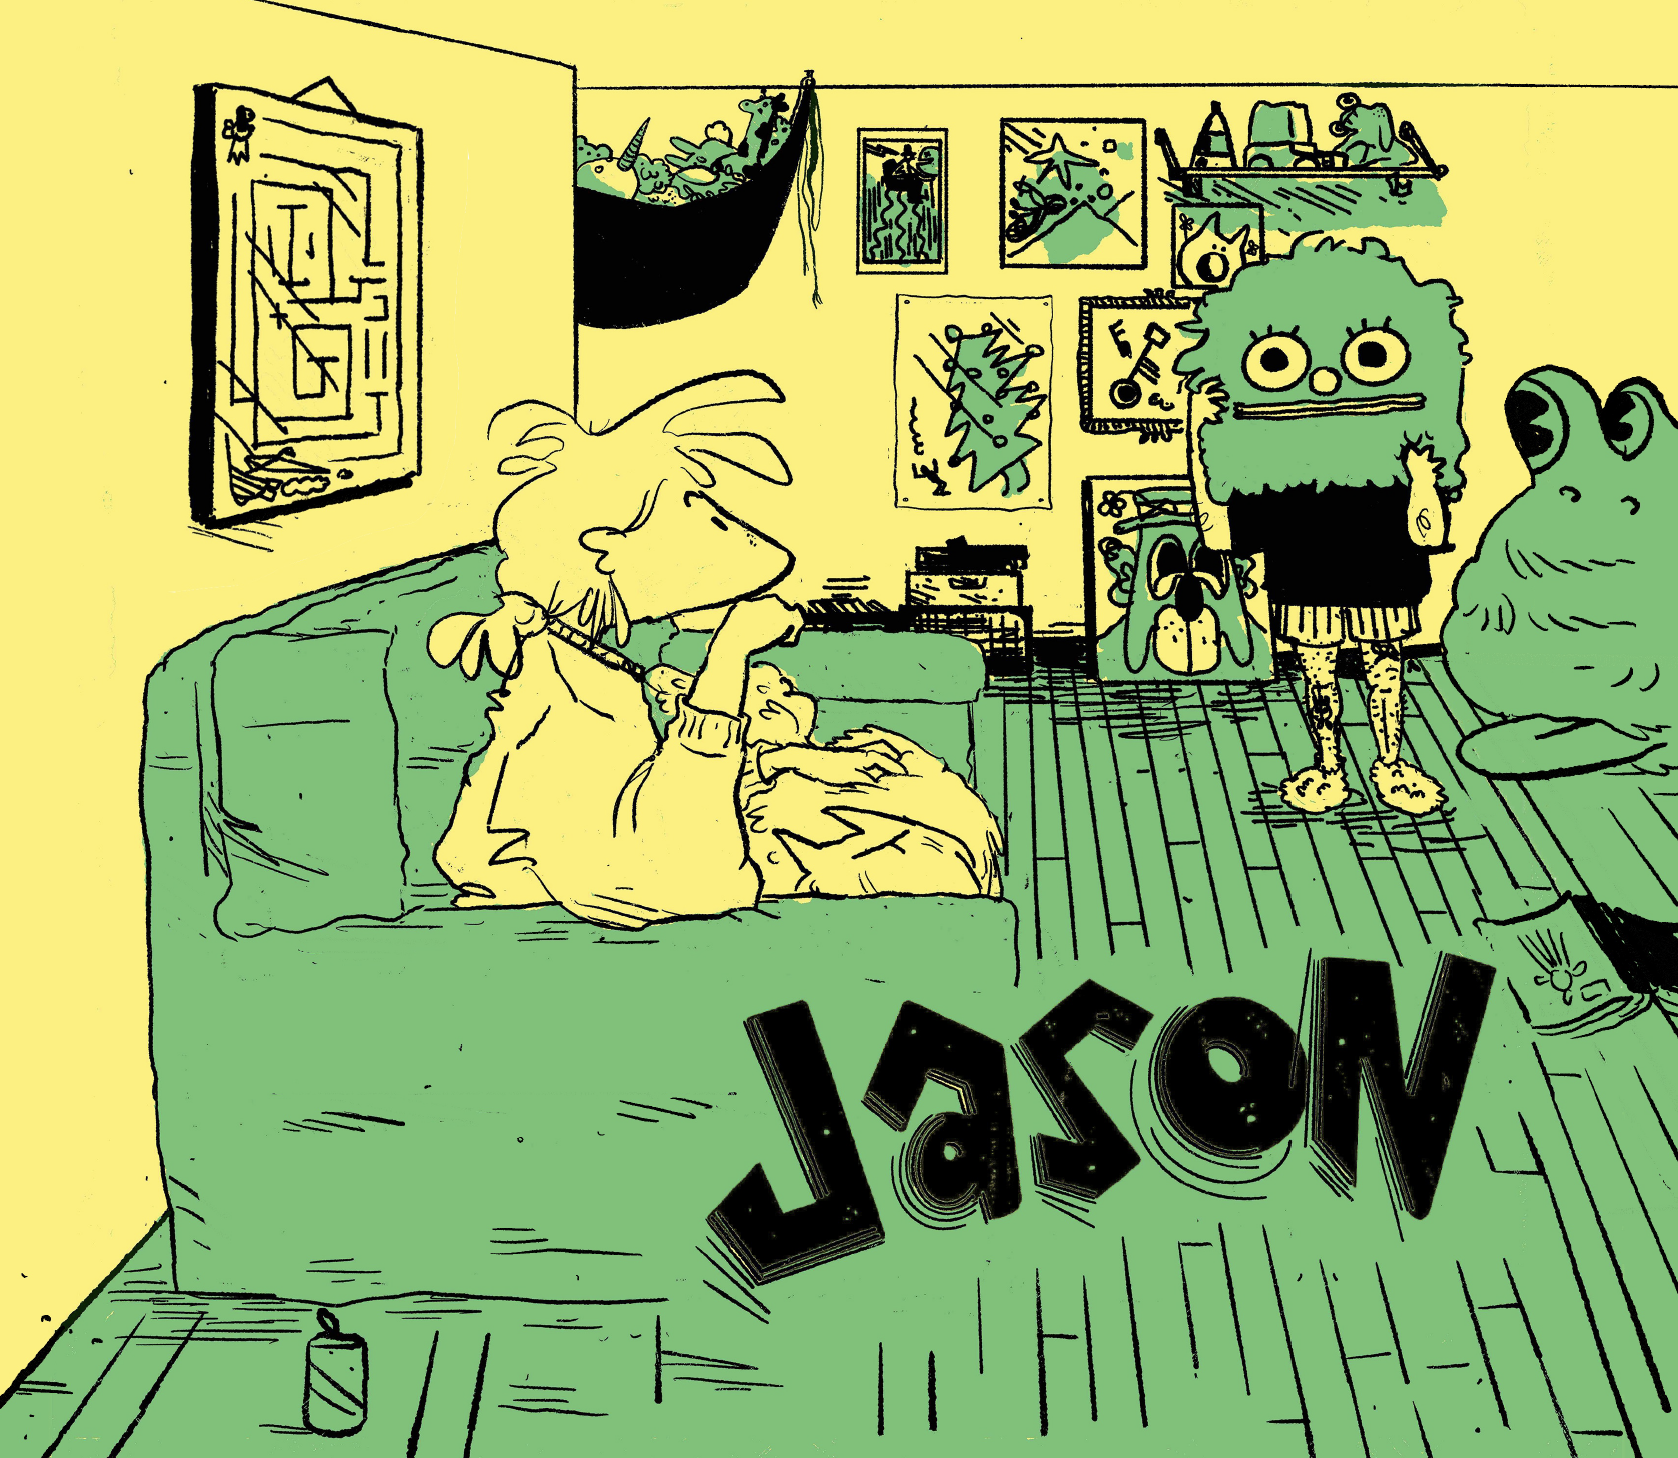 Jason, Chapter 2